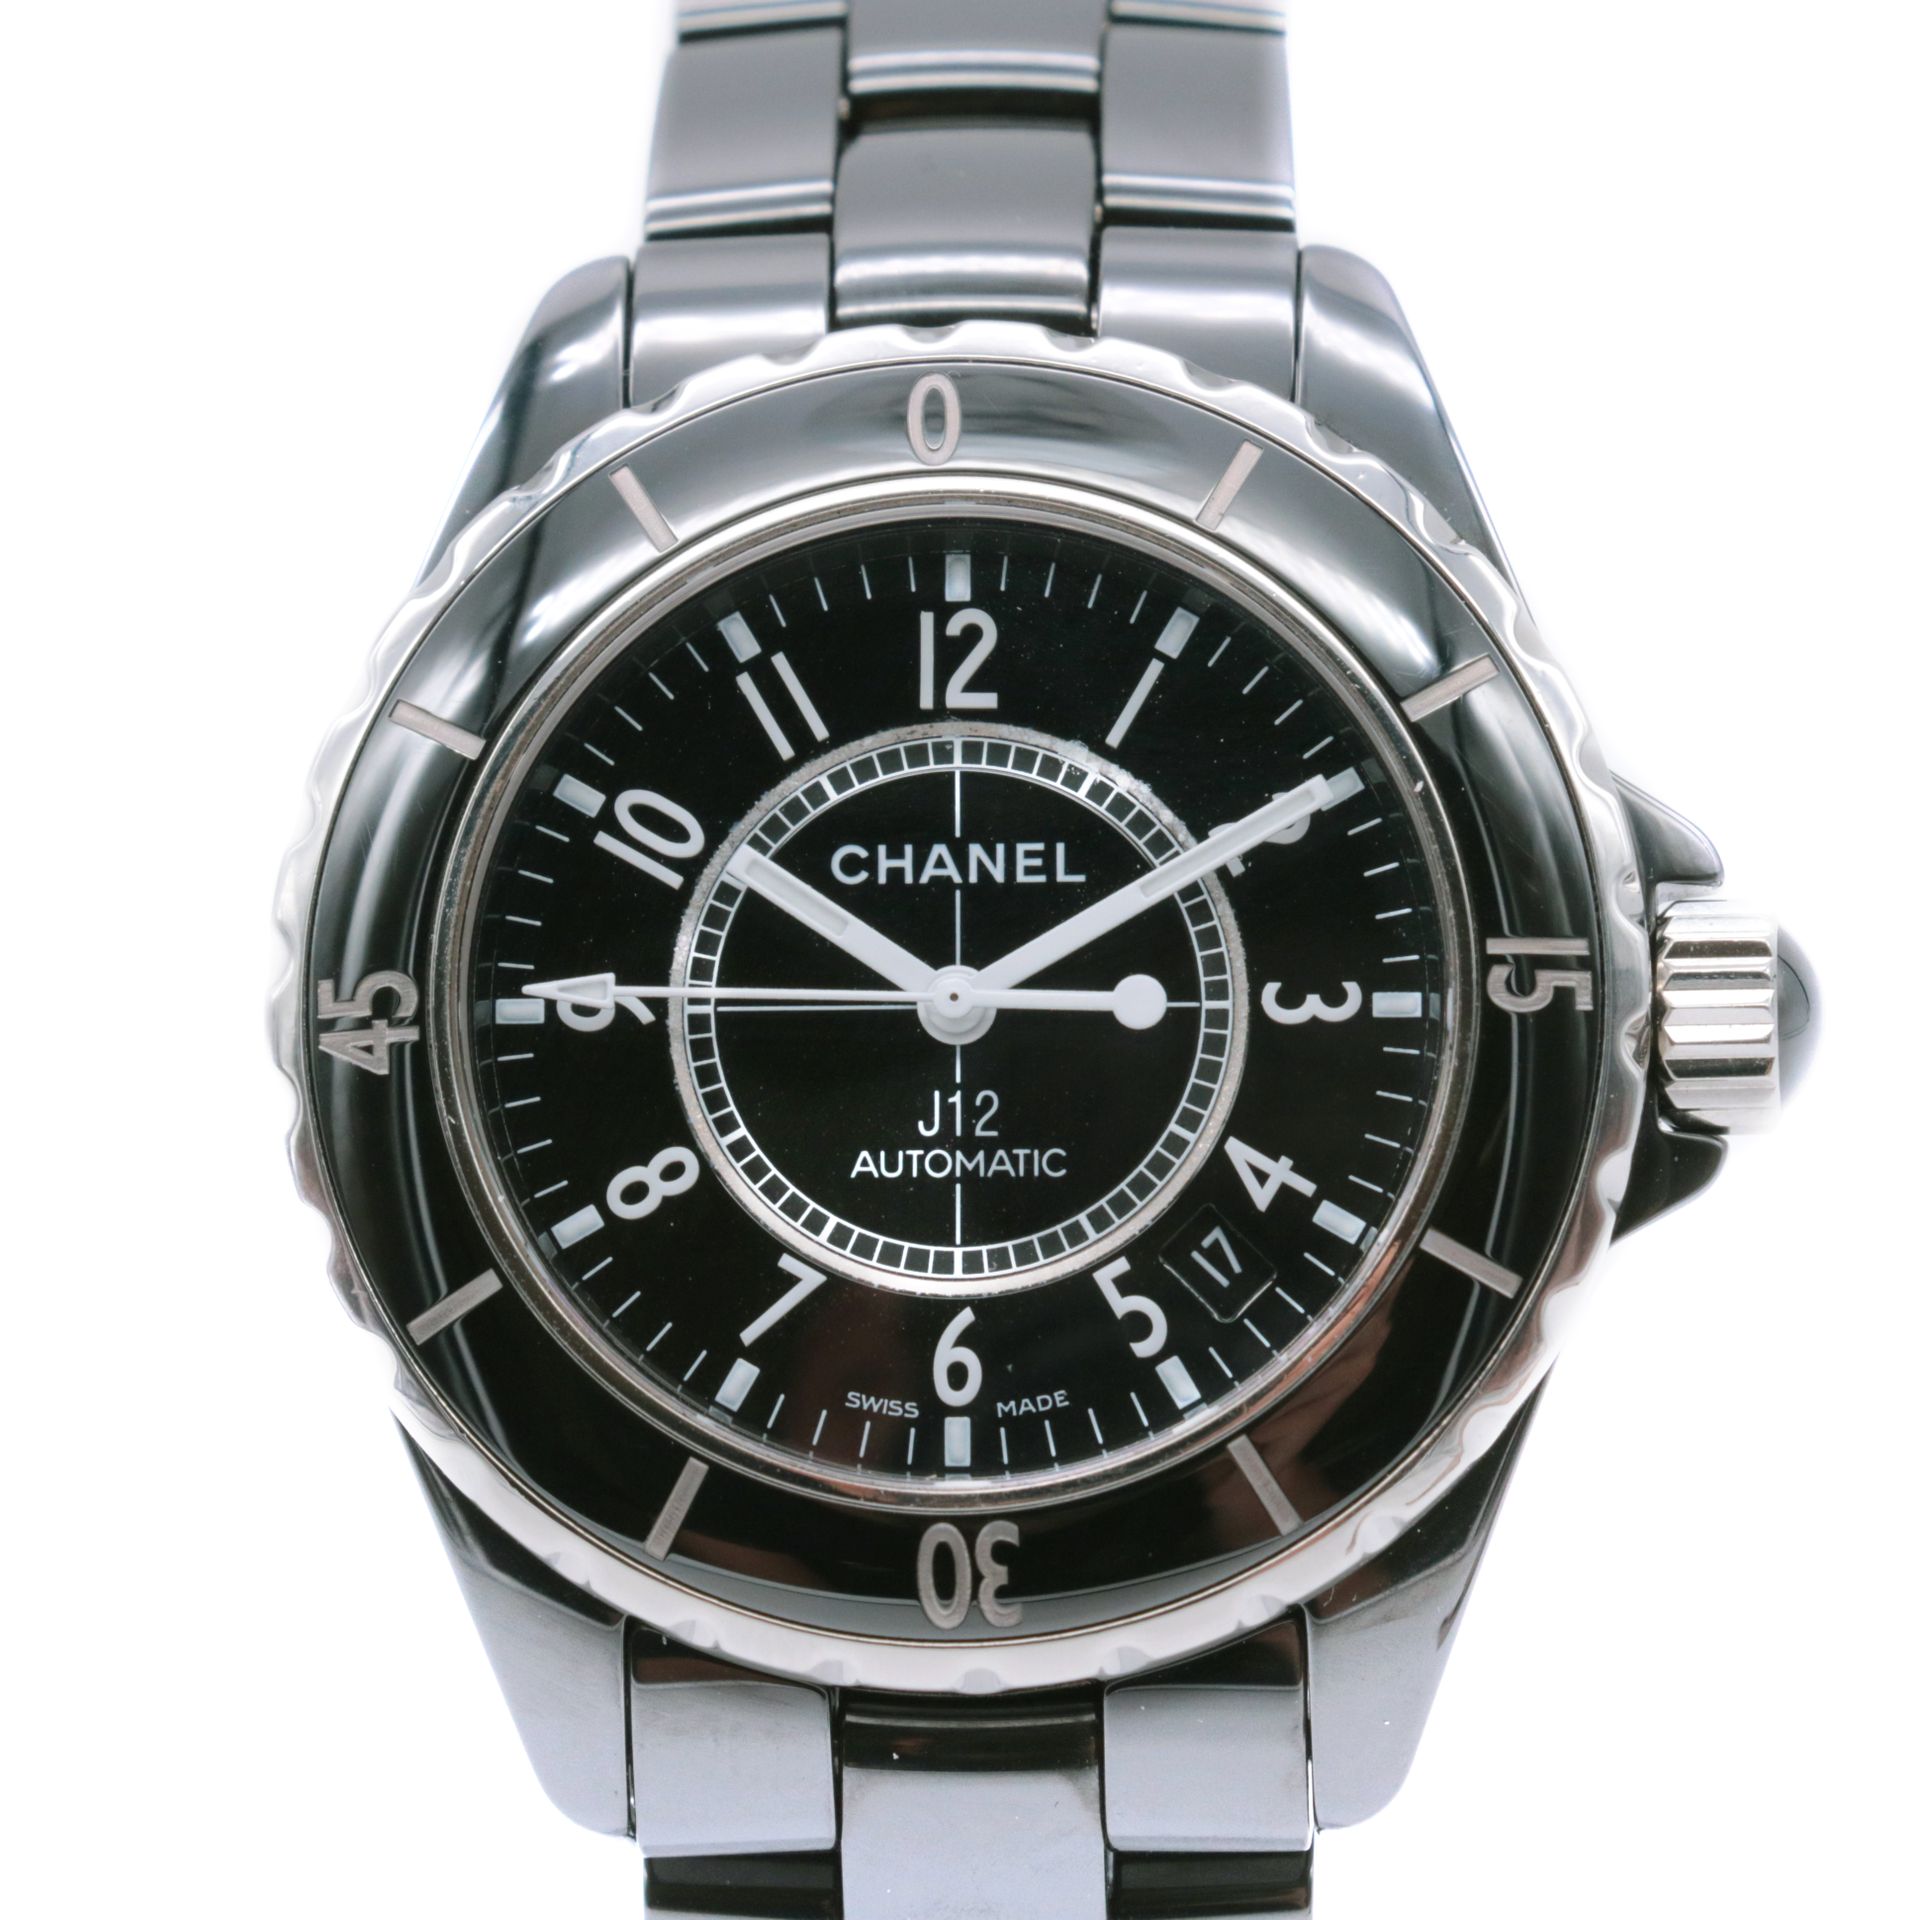 Montre Chanel, J12 Ceramic La caja de cerámica y titanio, firmada

Esfera circul&hellip;